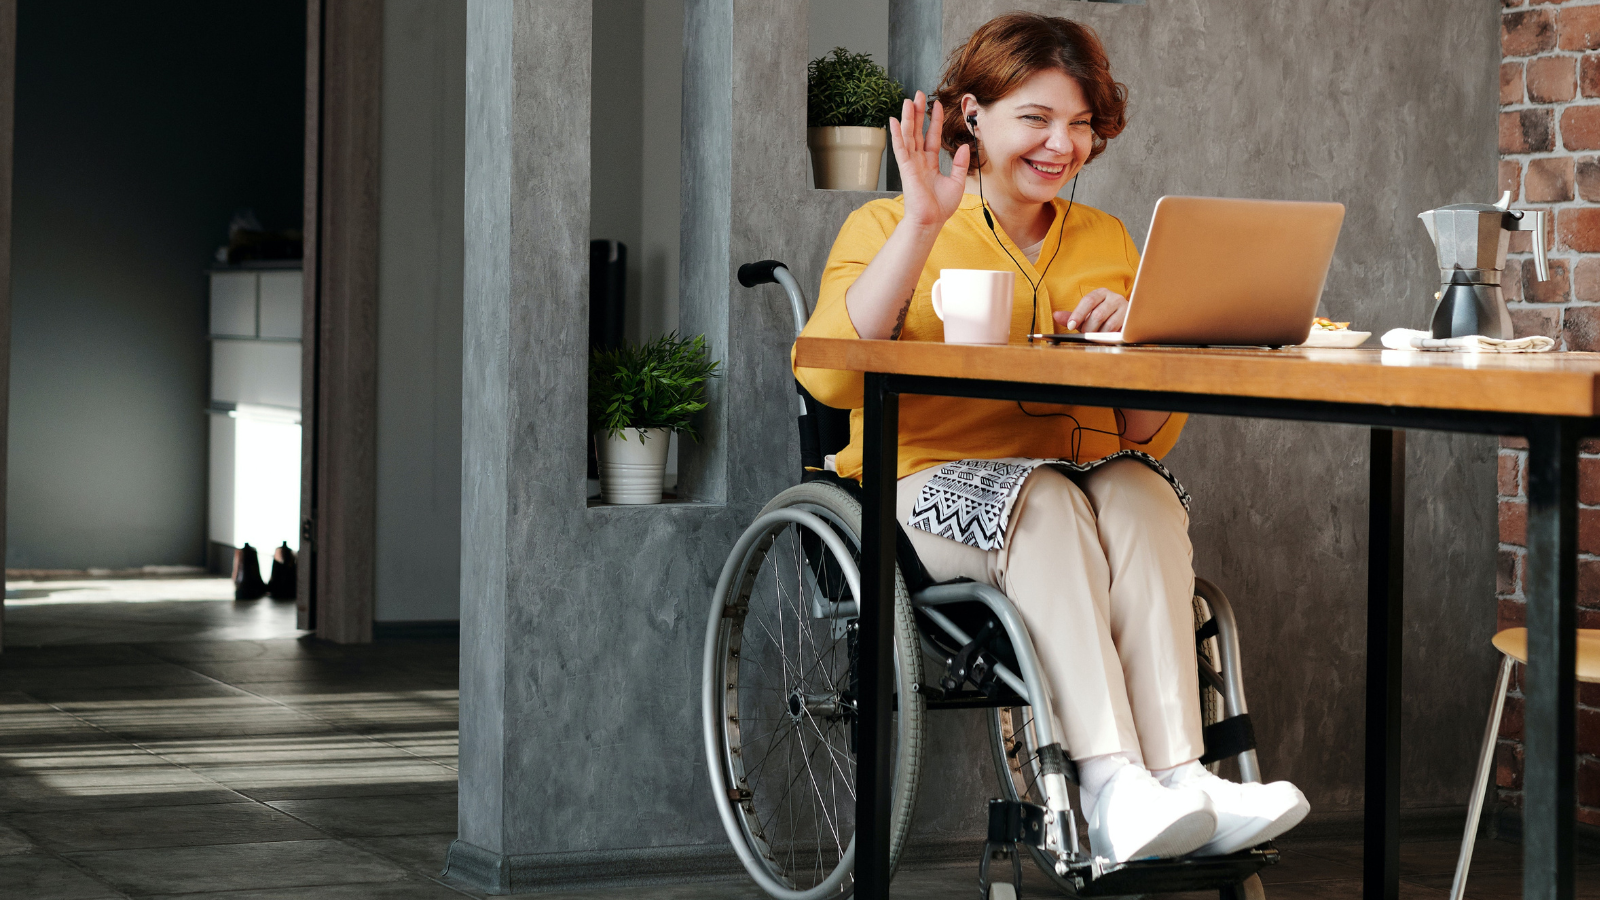 Fotografía de una mujer joven en silla de ruedas trabajando con su ordenador portátil